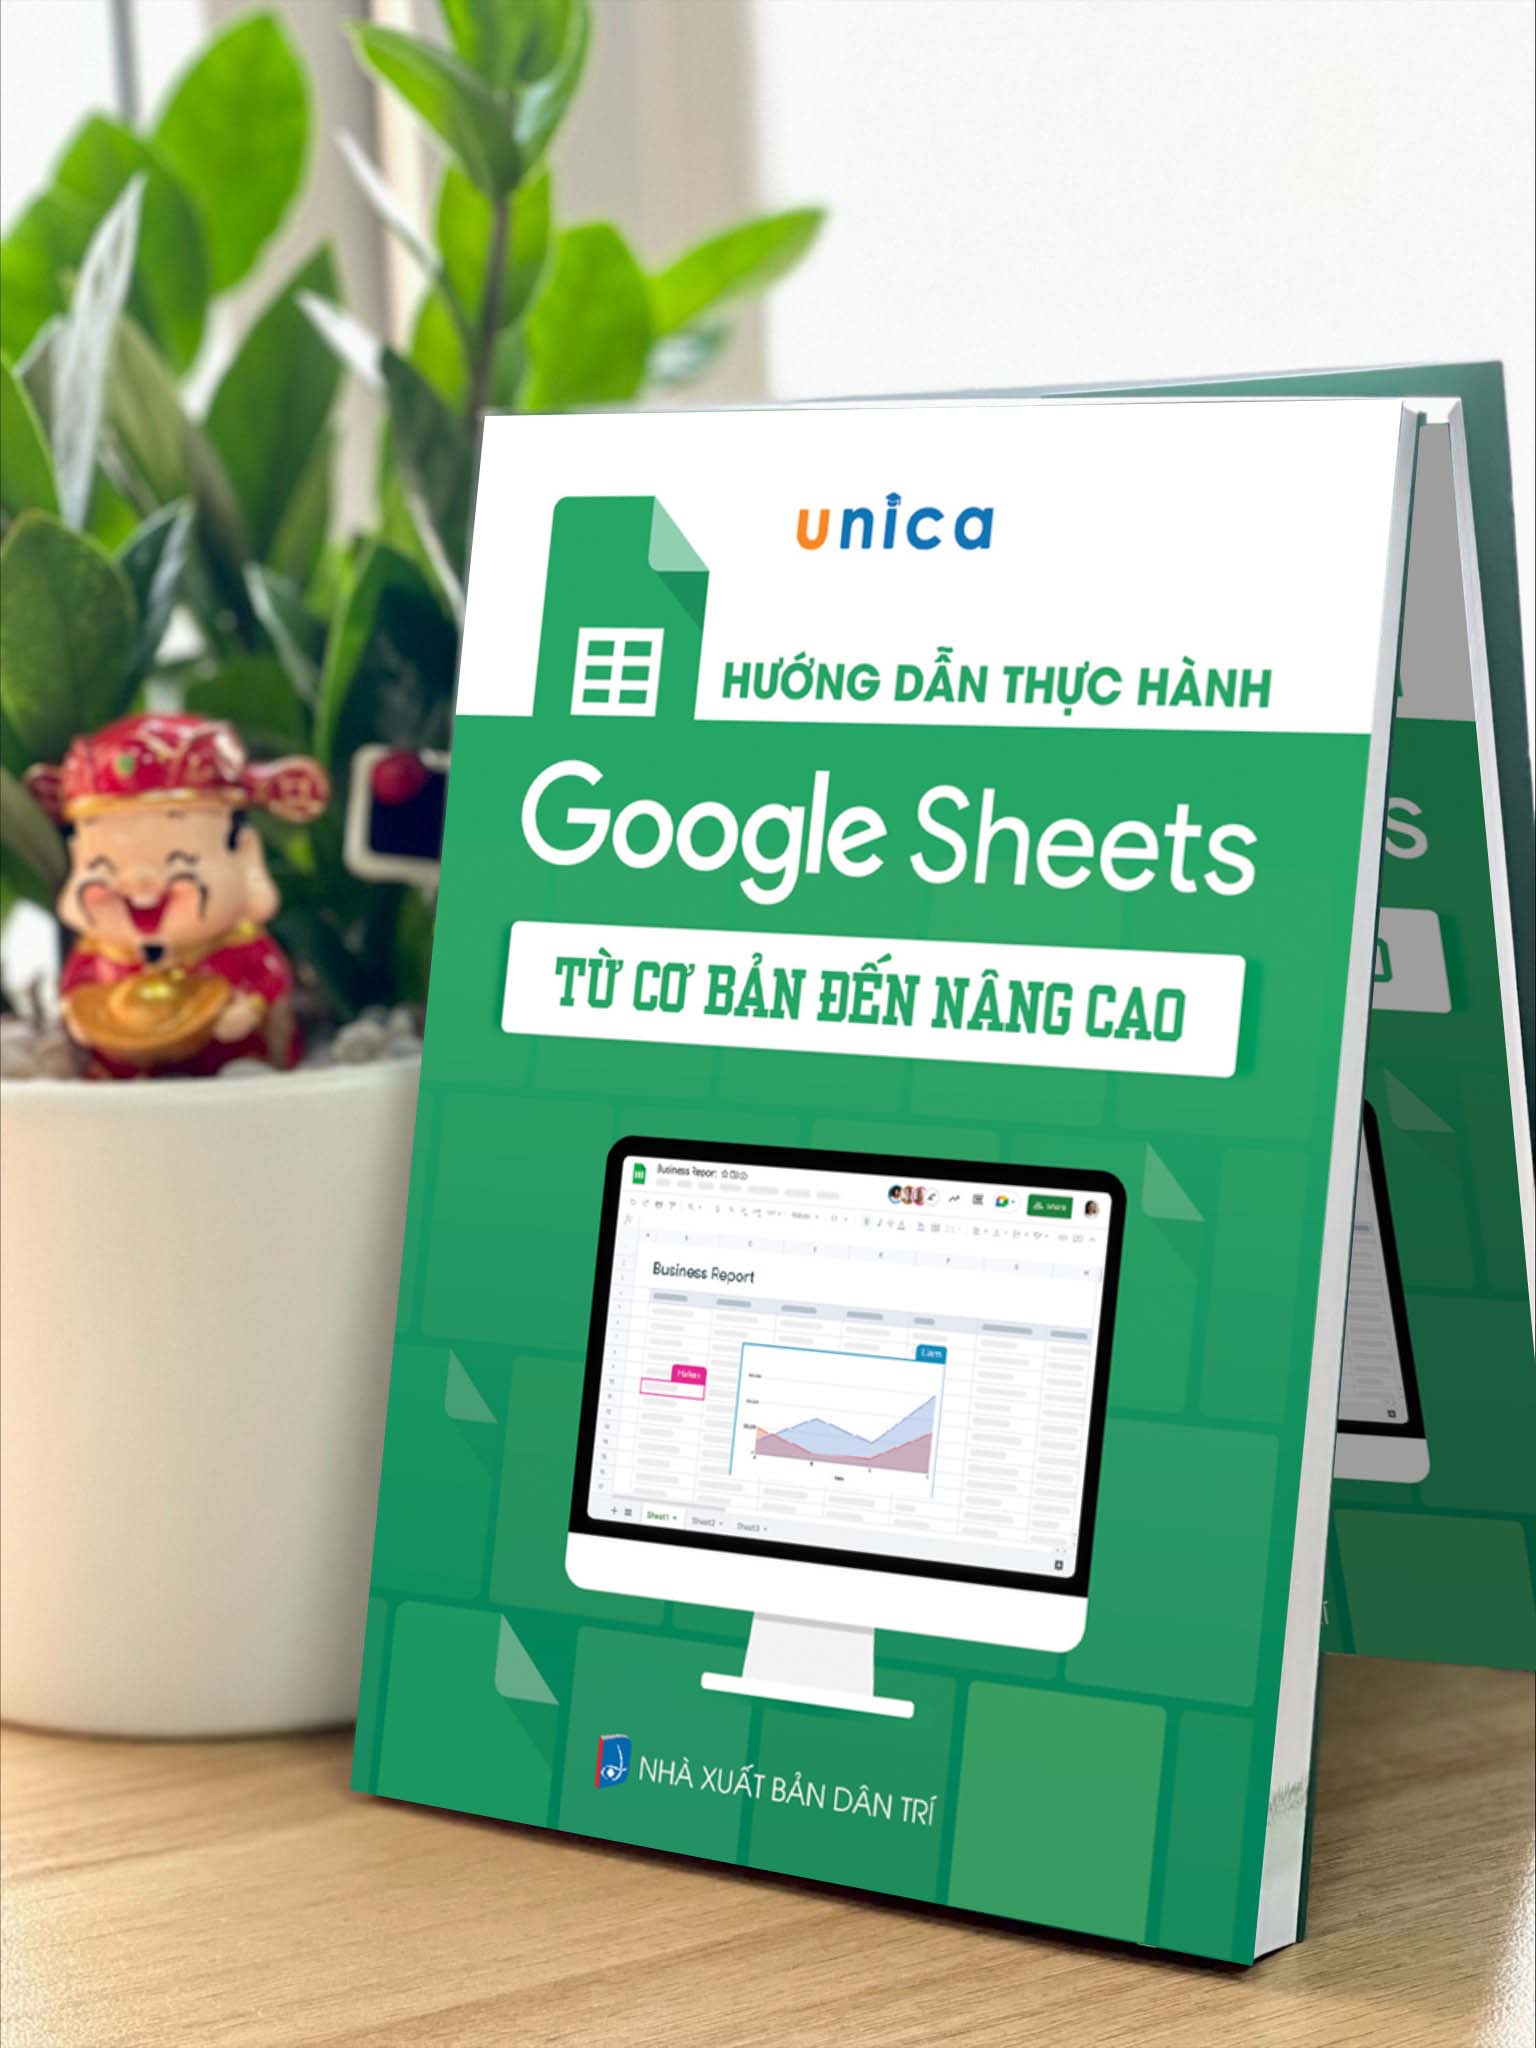 Sách Google Sheet Tin học văn phòng Unica, Hướng dẫn thực hành từ cơ bản đến nâng cao, in màu chi tiết, TẶNG video bài giảng